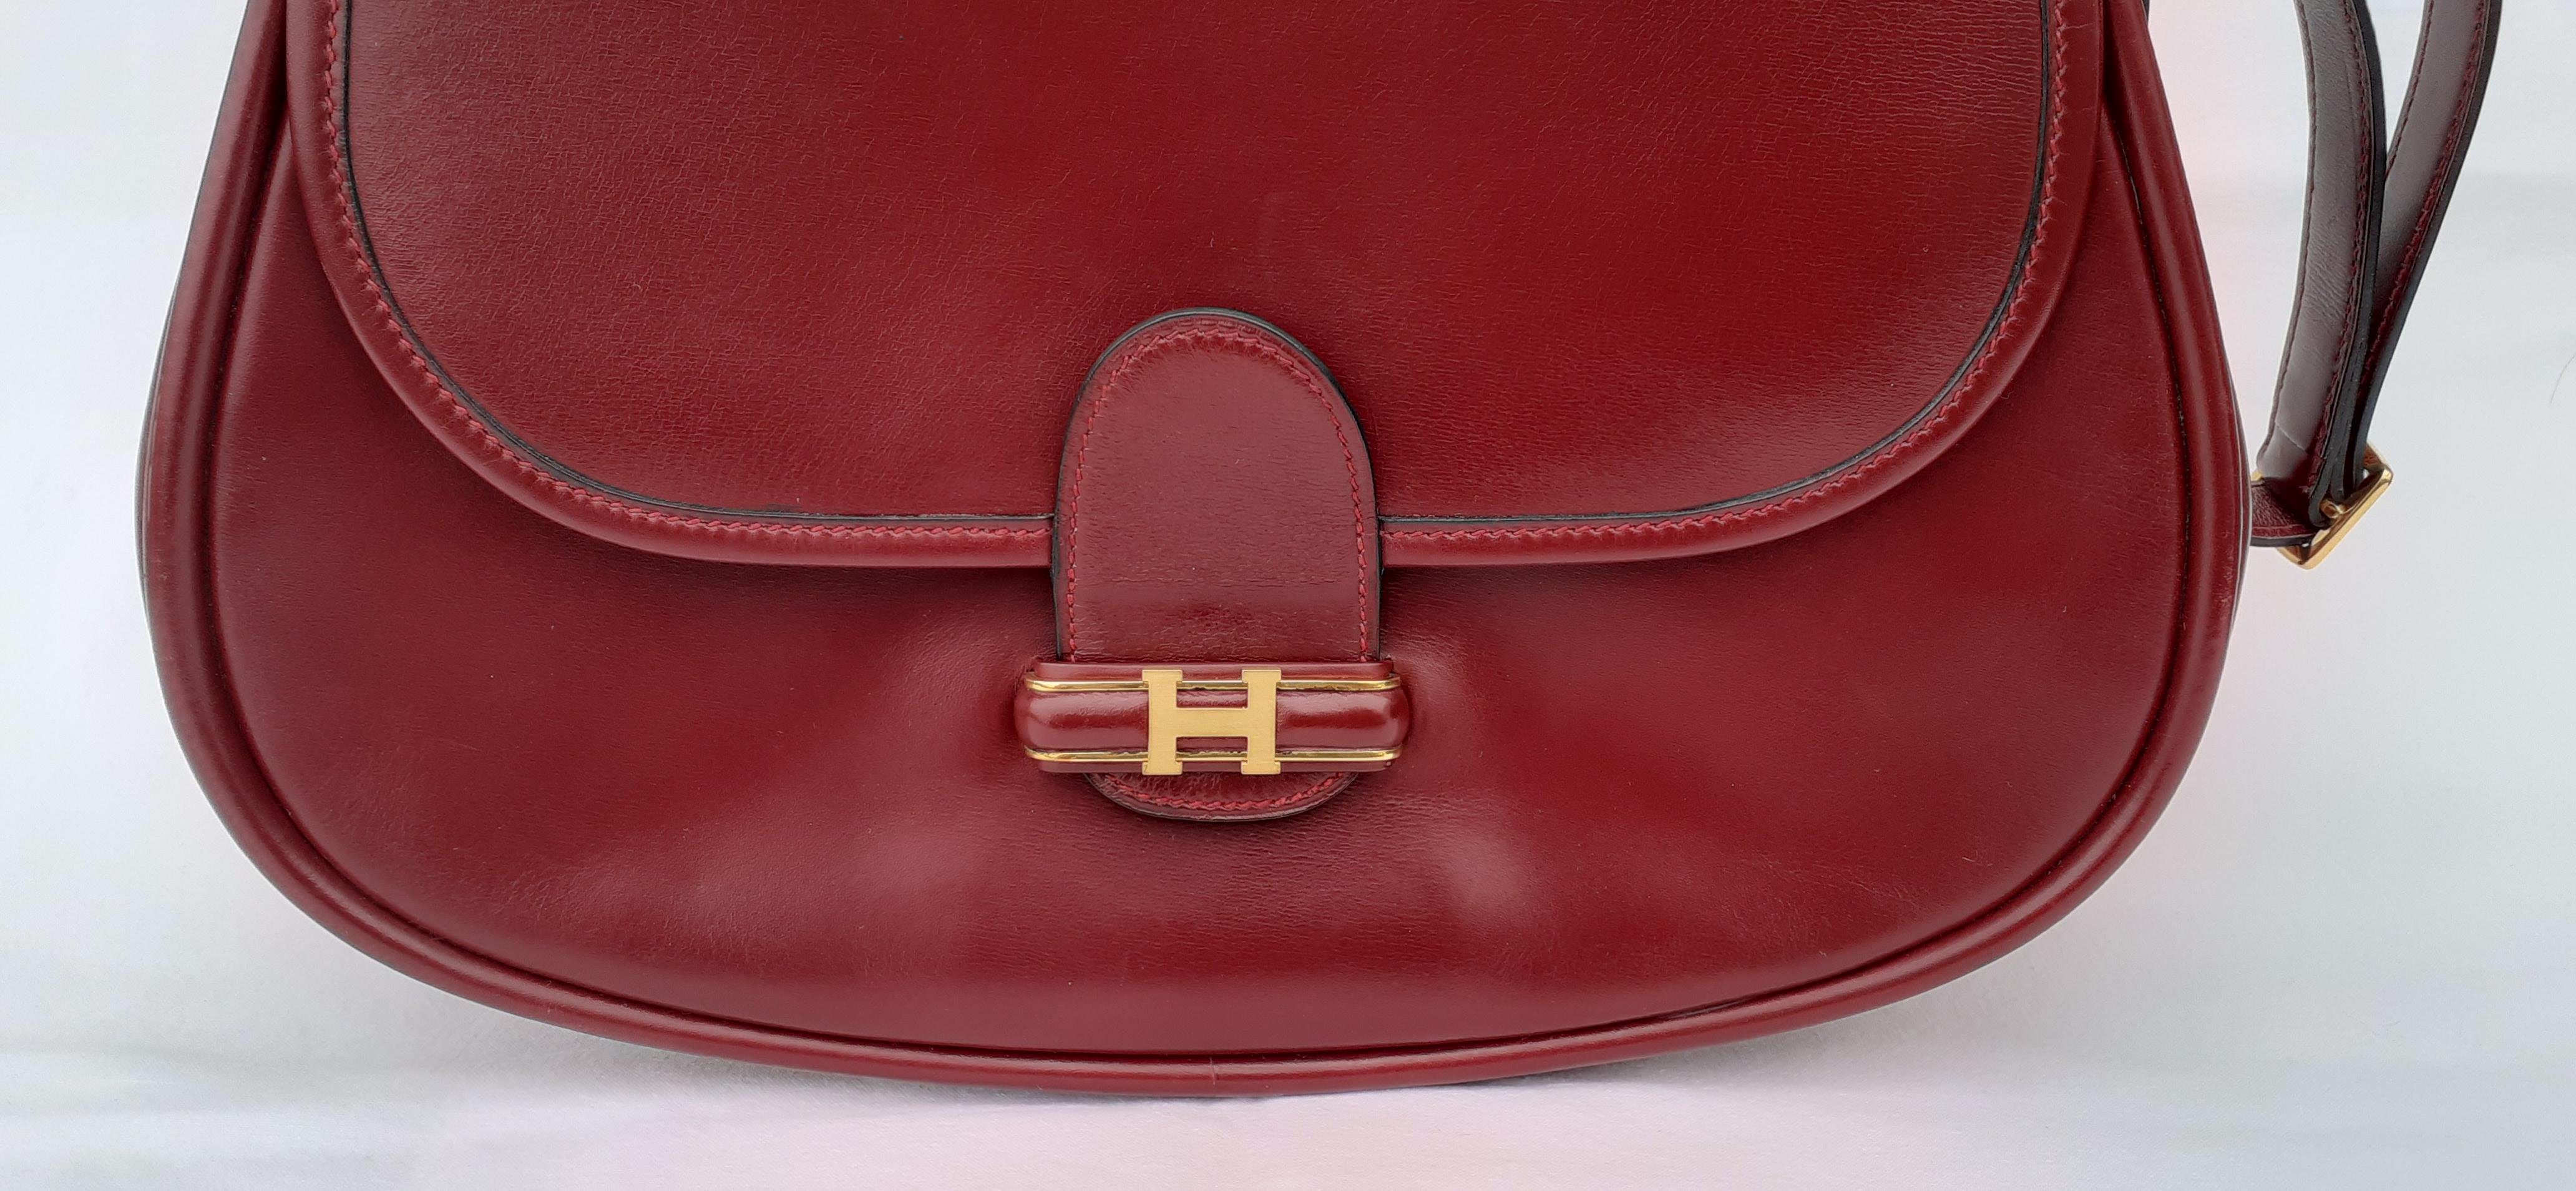 Schöne und seltene authentische Hermès Tasche

